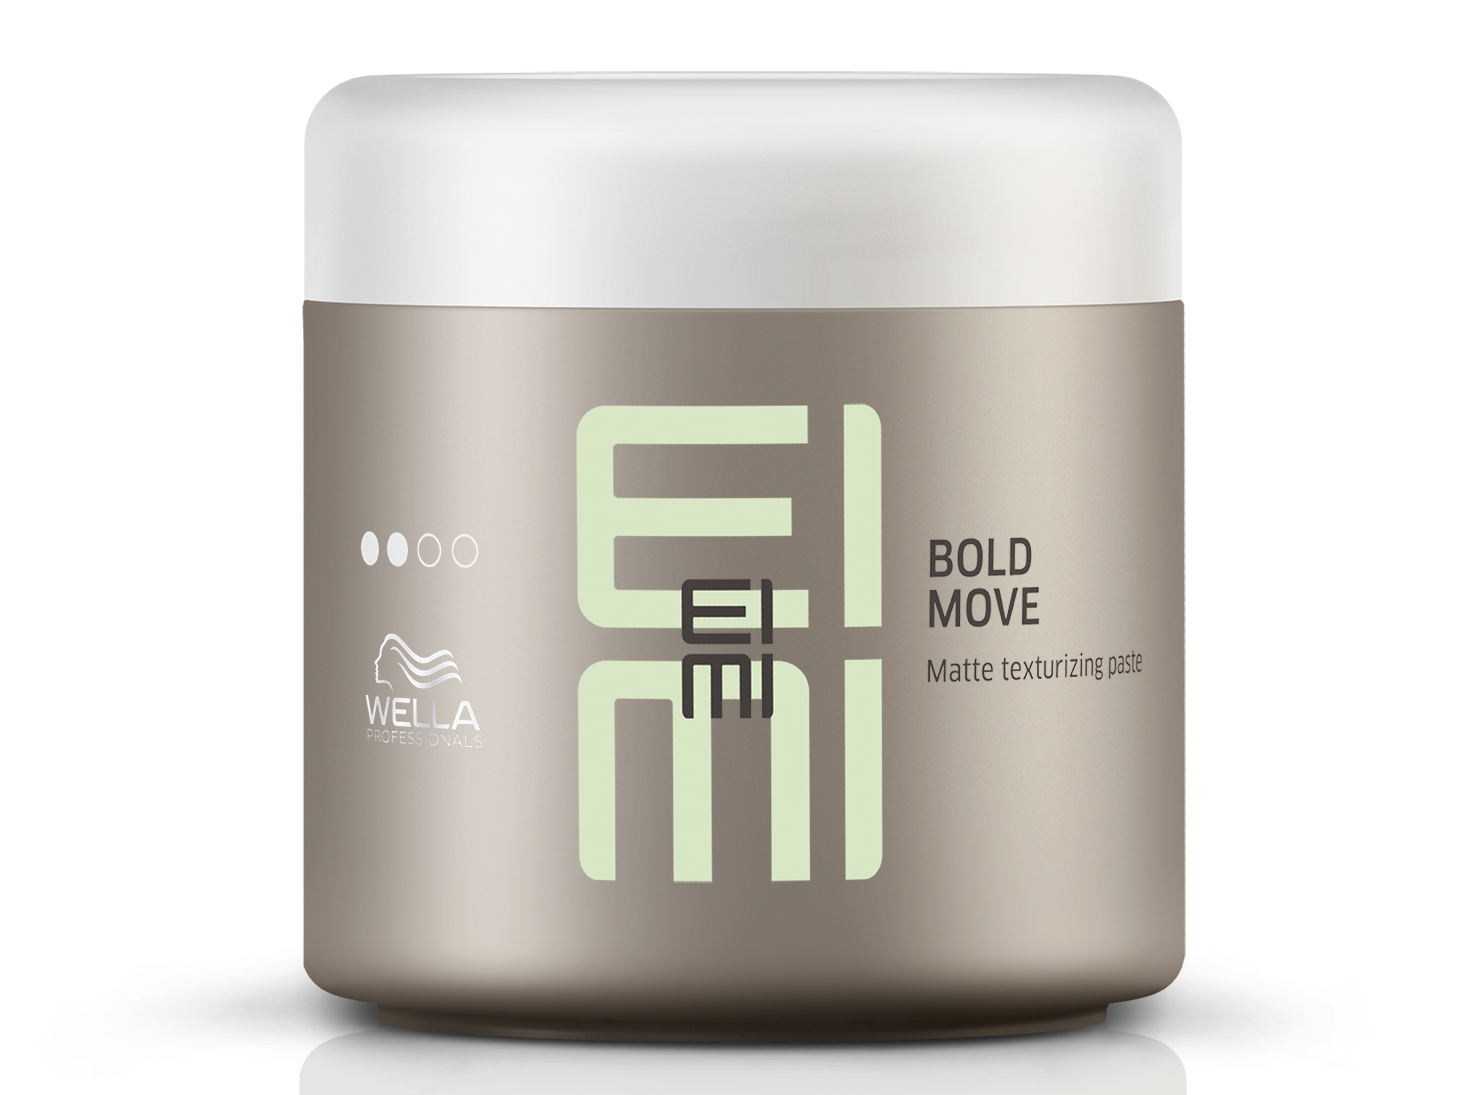 Flexibilní matující pasta na vlasy Wella EIMI Bold Move - 150 ml (81643746) + dárek zdarma